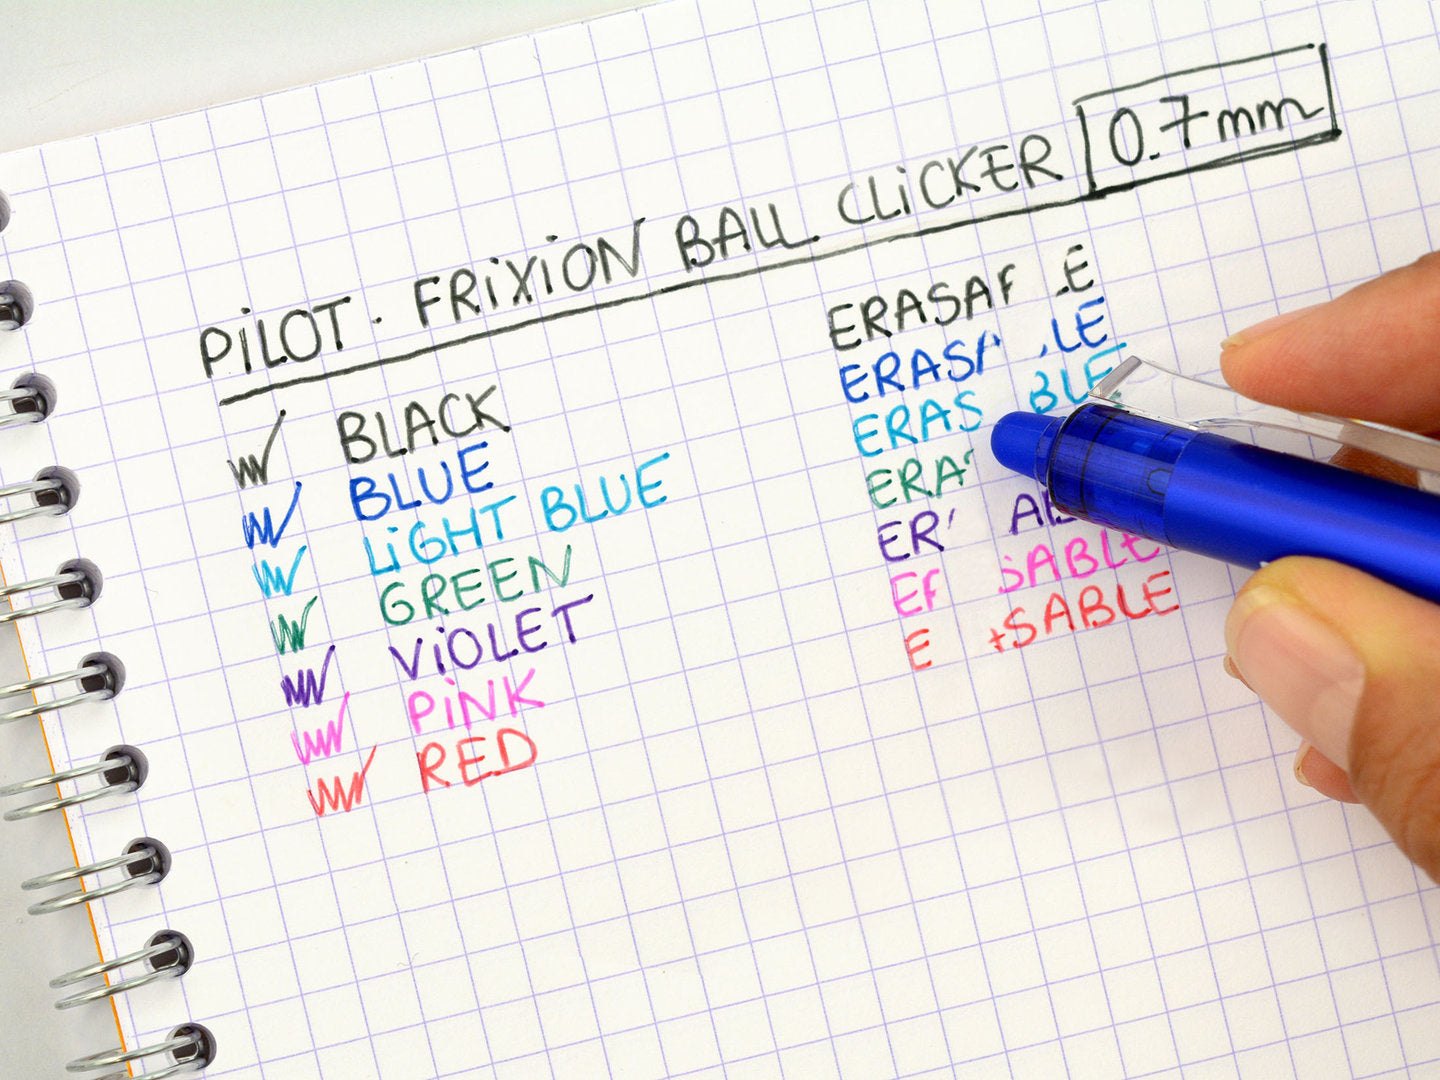 Pilot Frixion Ball Clicker 0,7 - pinkki